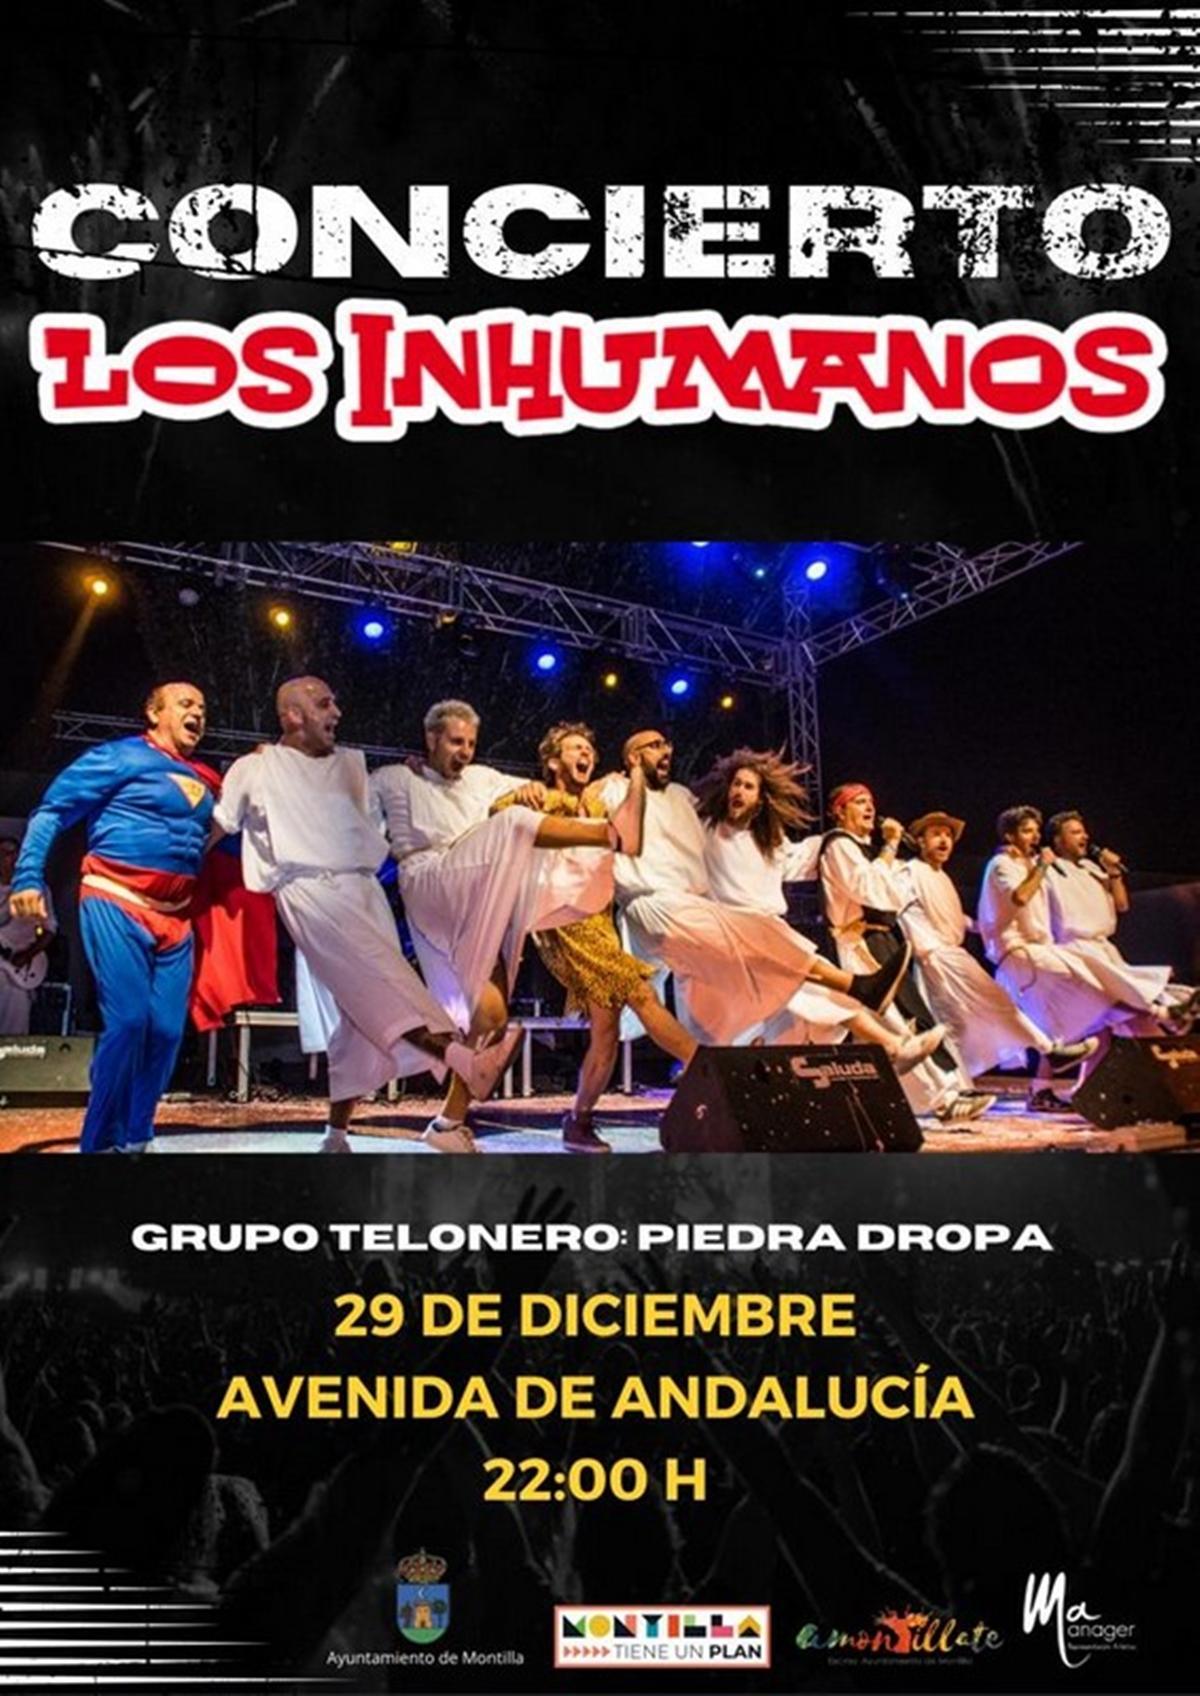 Concierto de Los Inhumanos el próximo 29 de diciembre.